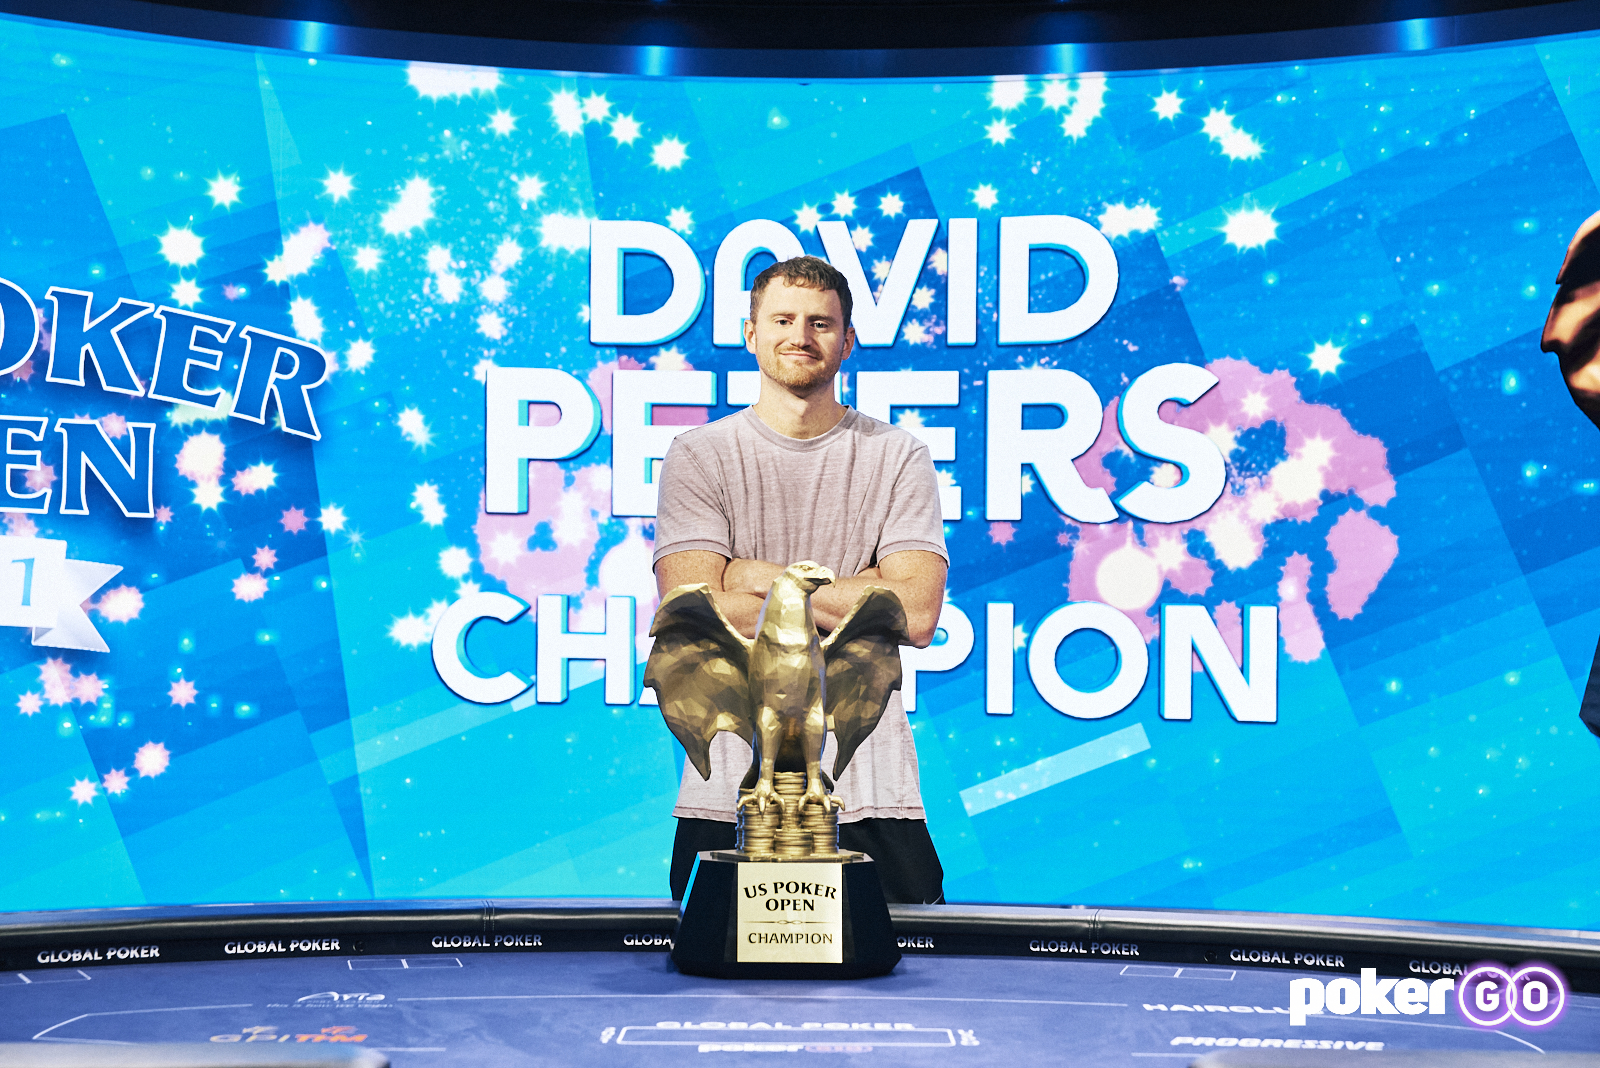 Дэвид Питерс с трофеем за оформление трёх побед подряд на U.S. POKER OPEN CHAMPIONSHIP